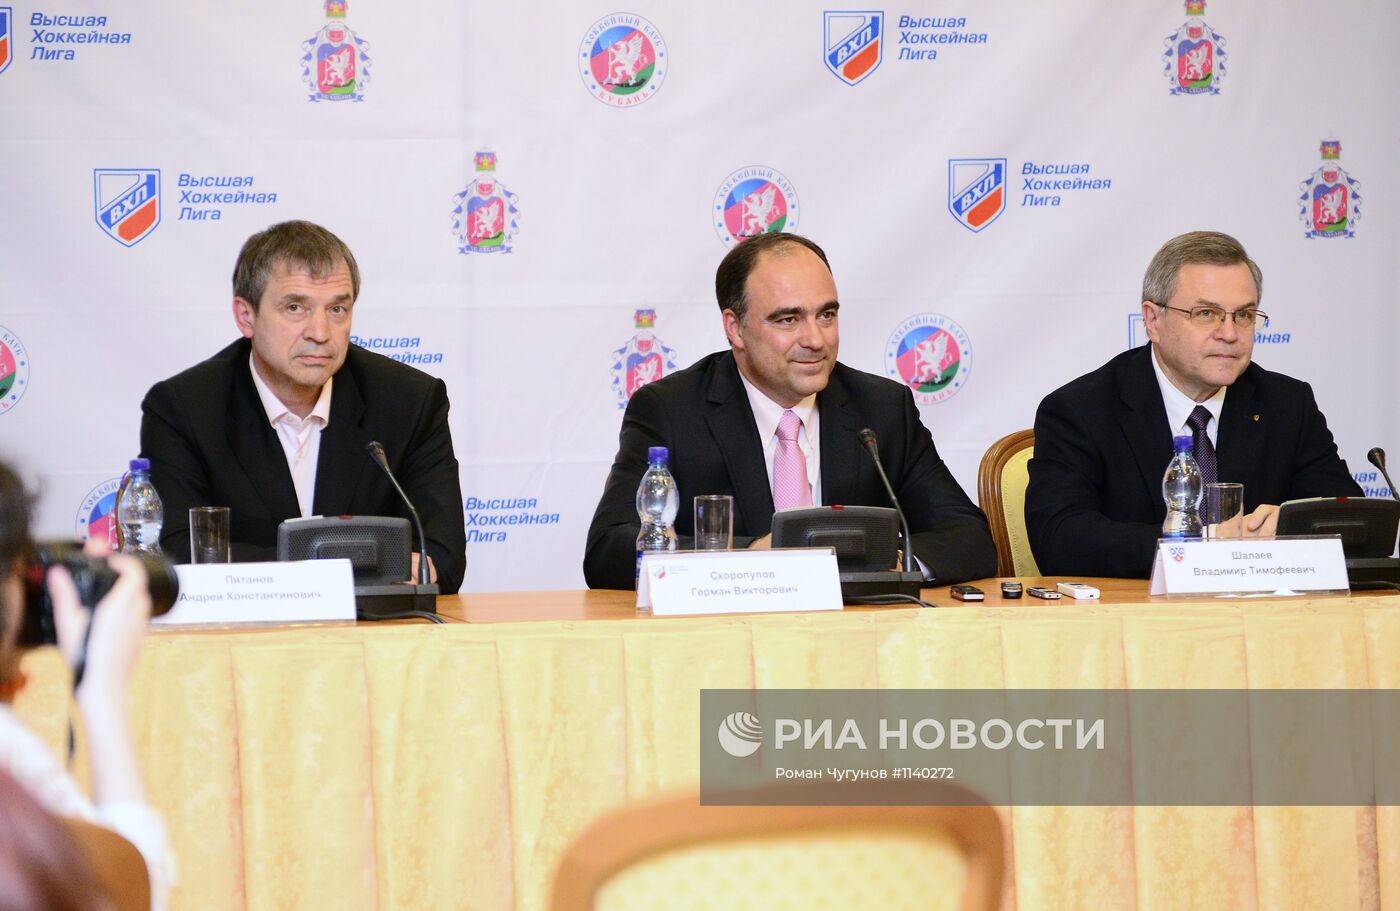 Хоккей. Презентация ХК "Кубань" в Сочи